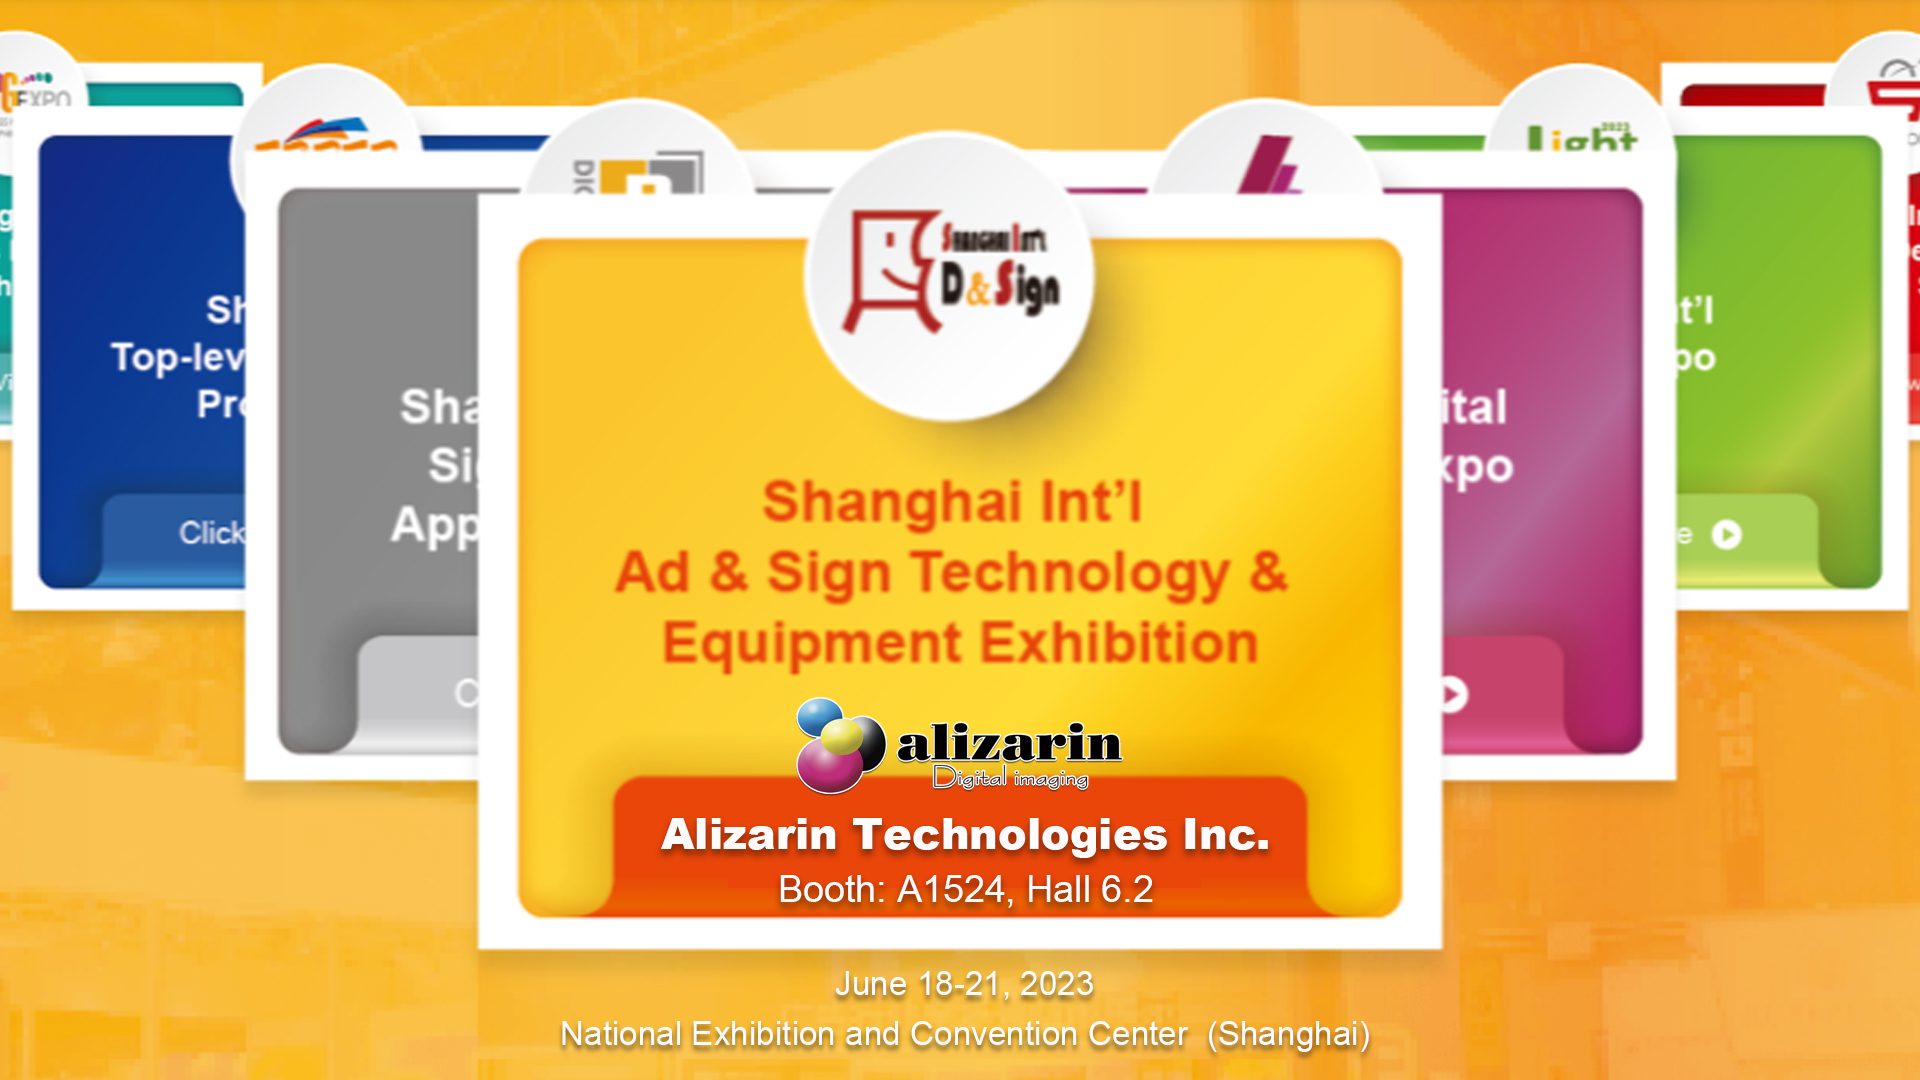 Bi xêr hatî Serdana Alizarin Technologies Inc. Of APPP EXPO 2023, Shanghai